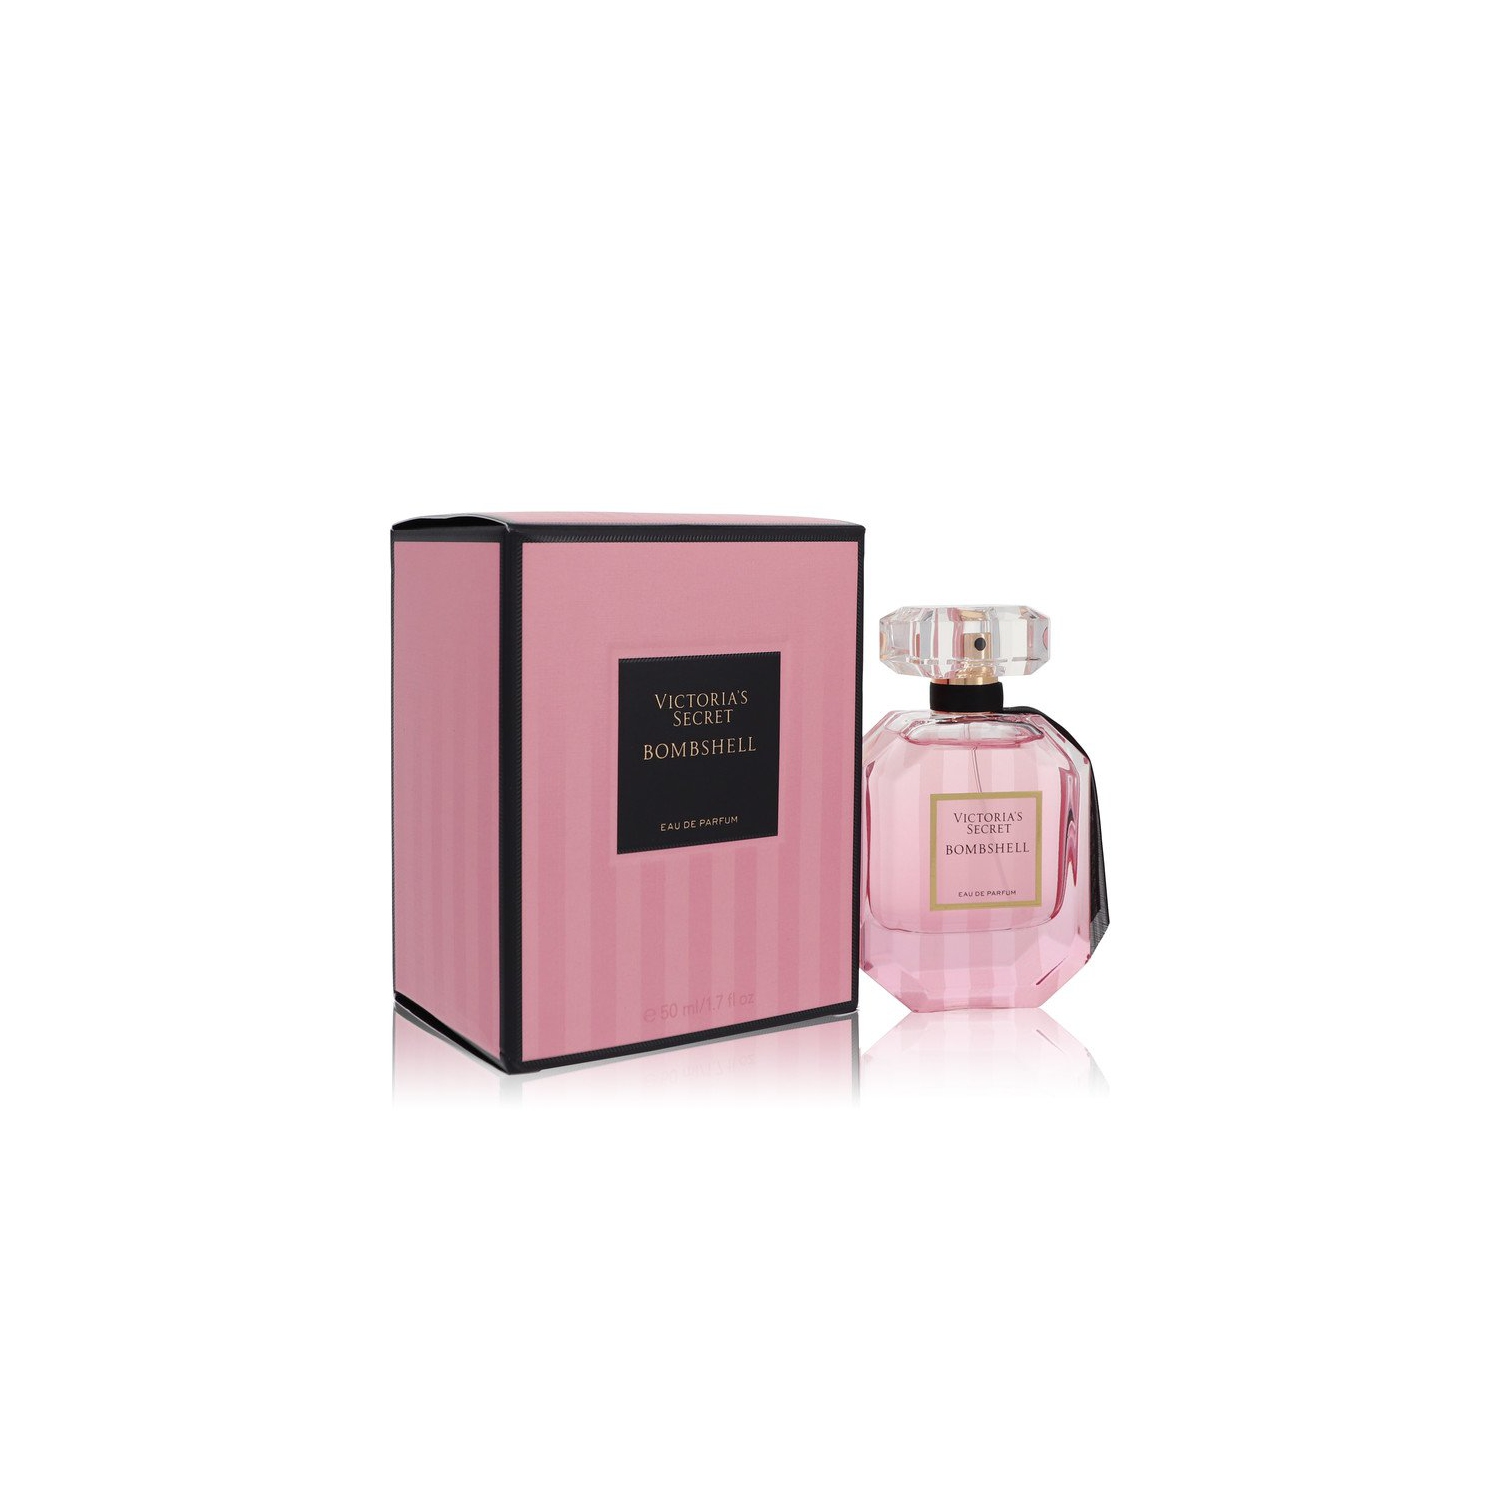 Bombshell by Victoria's Secret Eau De Parfum Spray 1.7 oz for